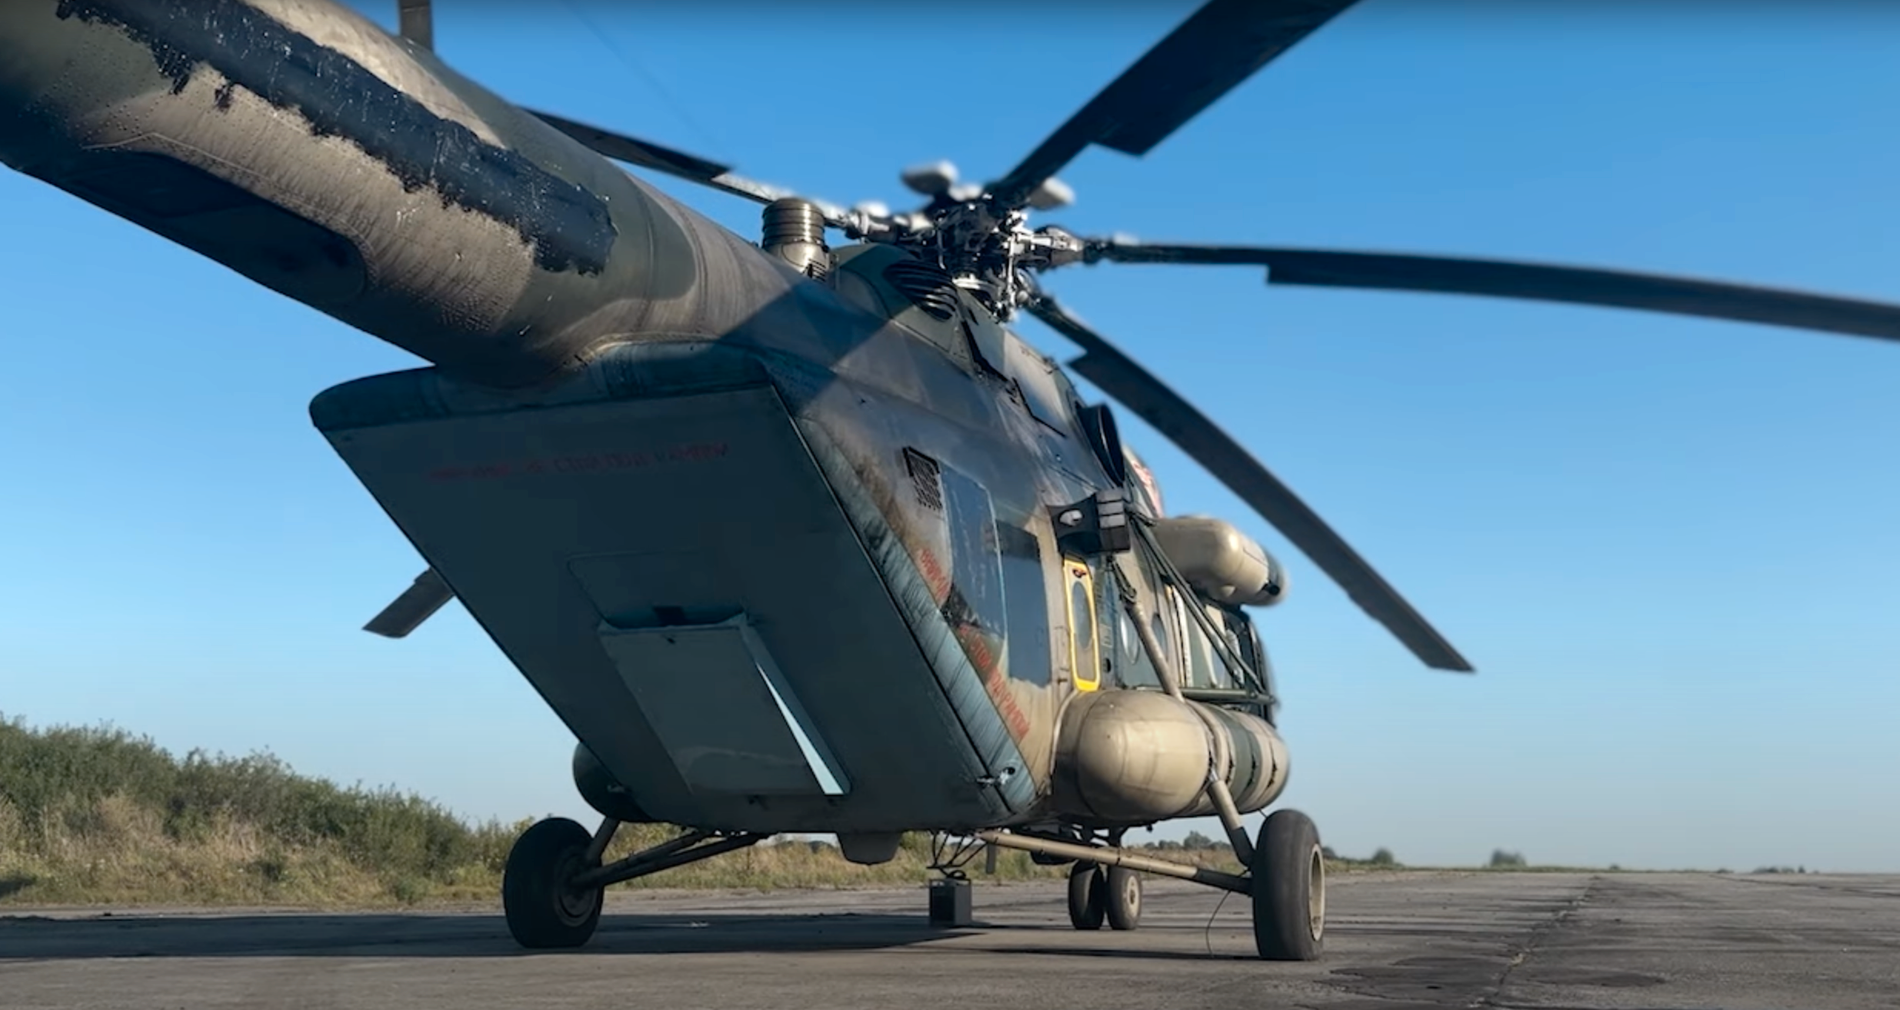 Den ryska helikoptern innehöll ”hemlig teknisk utrustning”, enligt den ukrainska militära underrättelsetjänsten GUR.